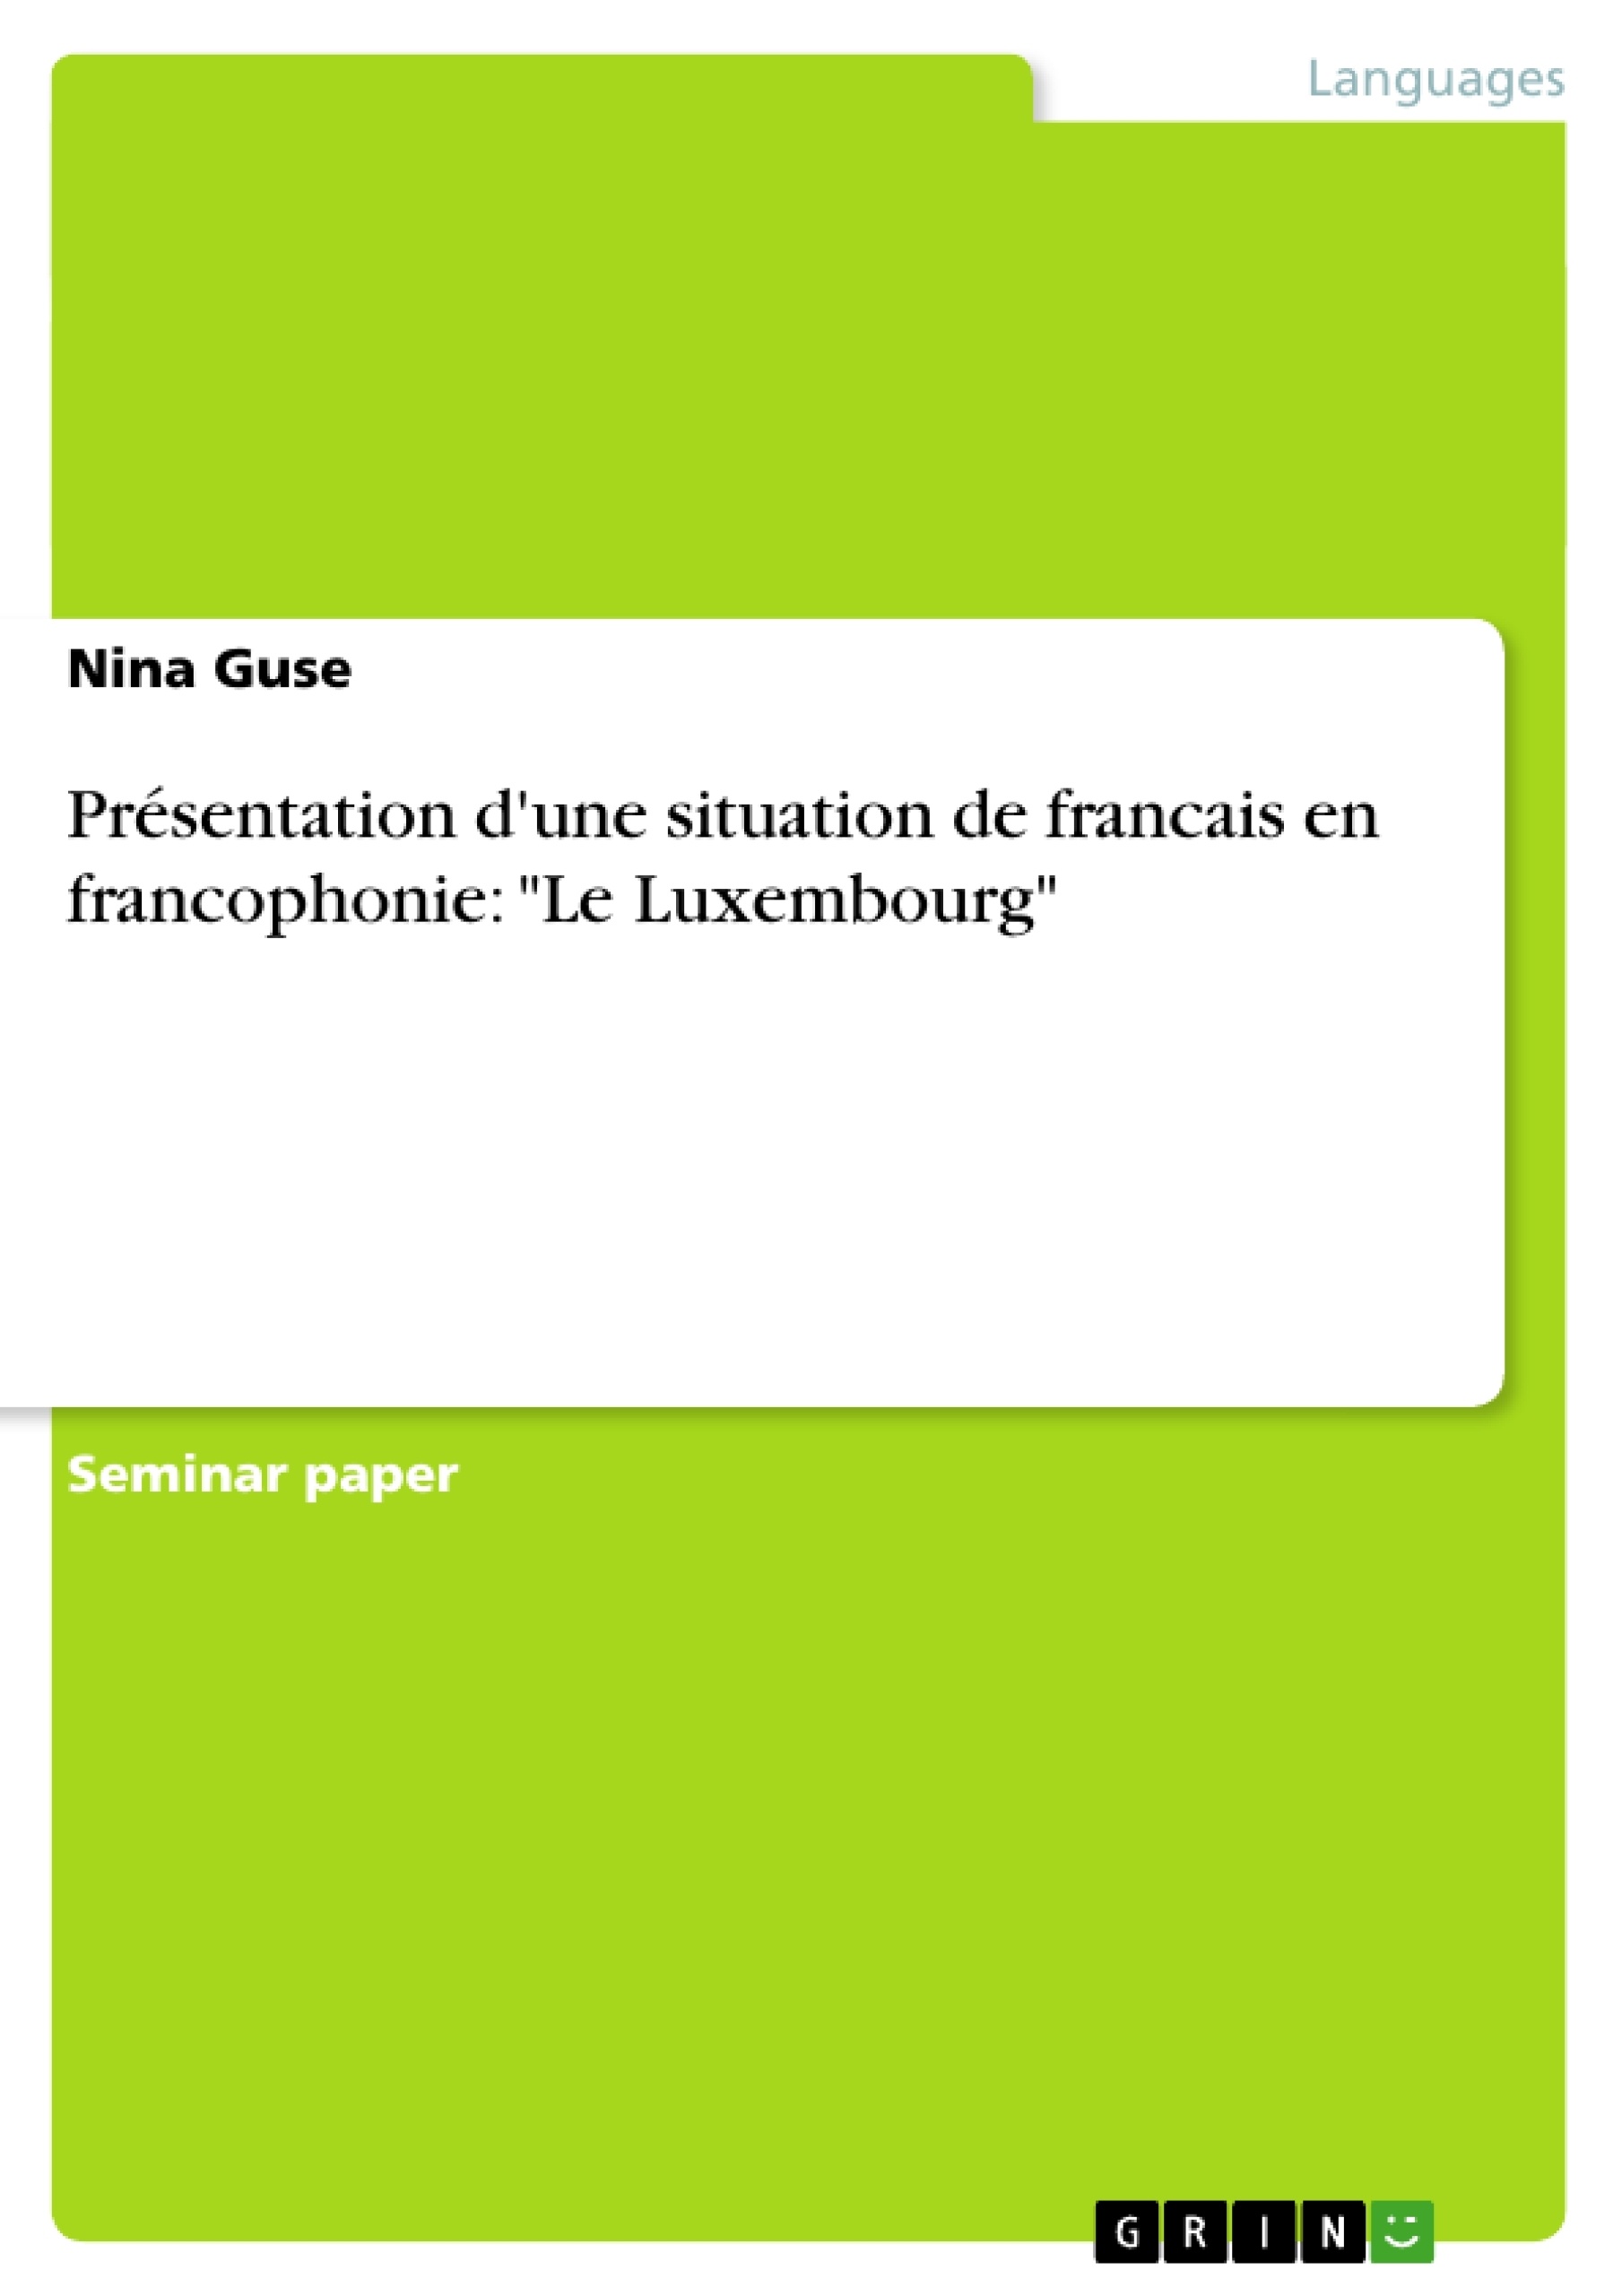 Titre: Présentation d'une situation de francais en francophonie: "Le Luxembourg"